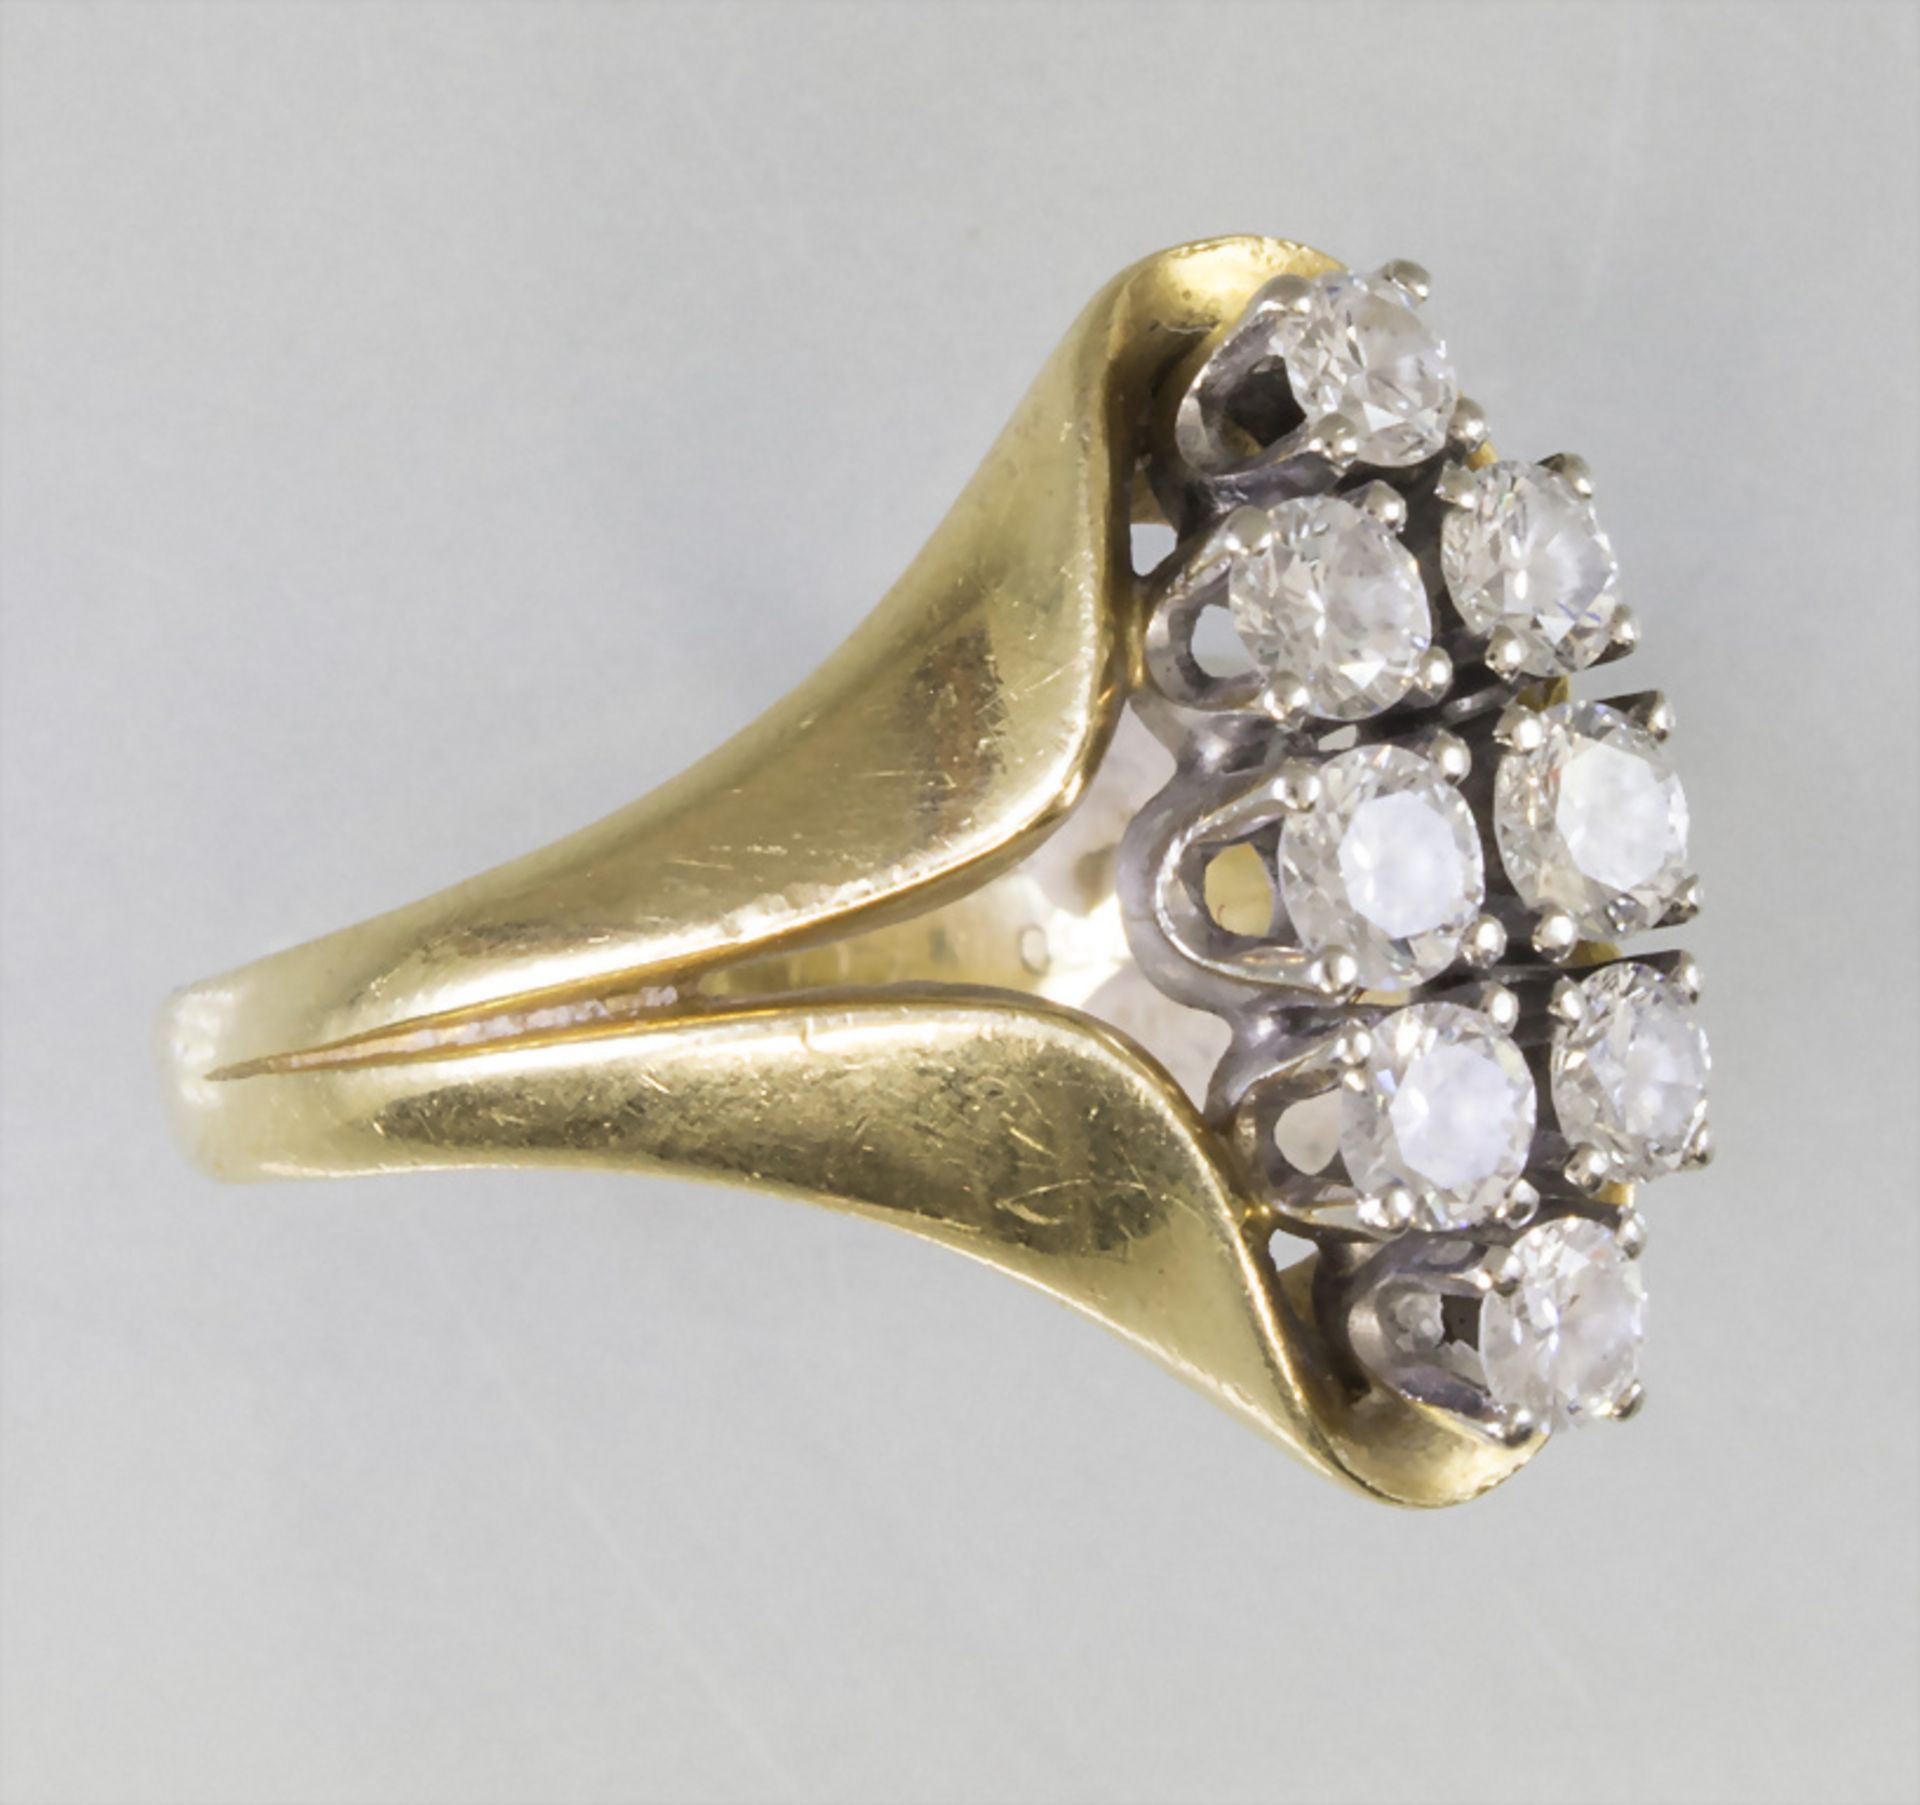 Damenring in Gelbgold mit Diamanten / A ladies 18k gold ring with diamonds - Bild 2 aus 4